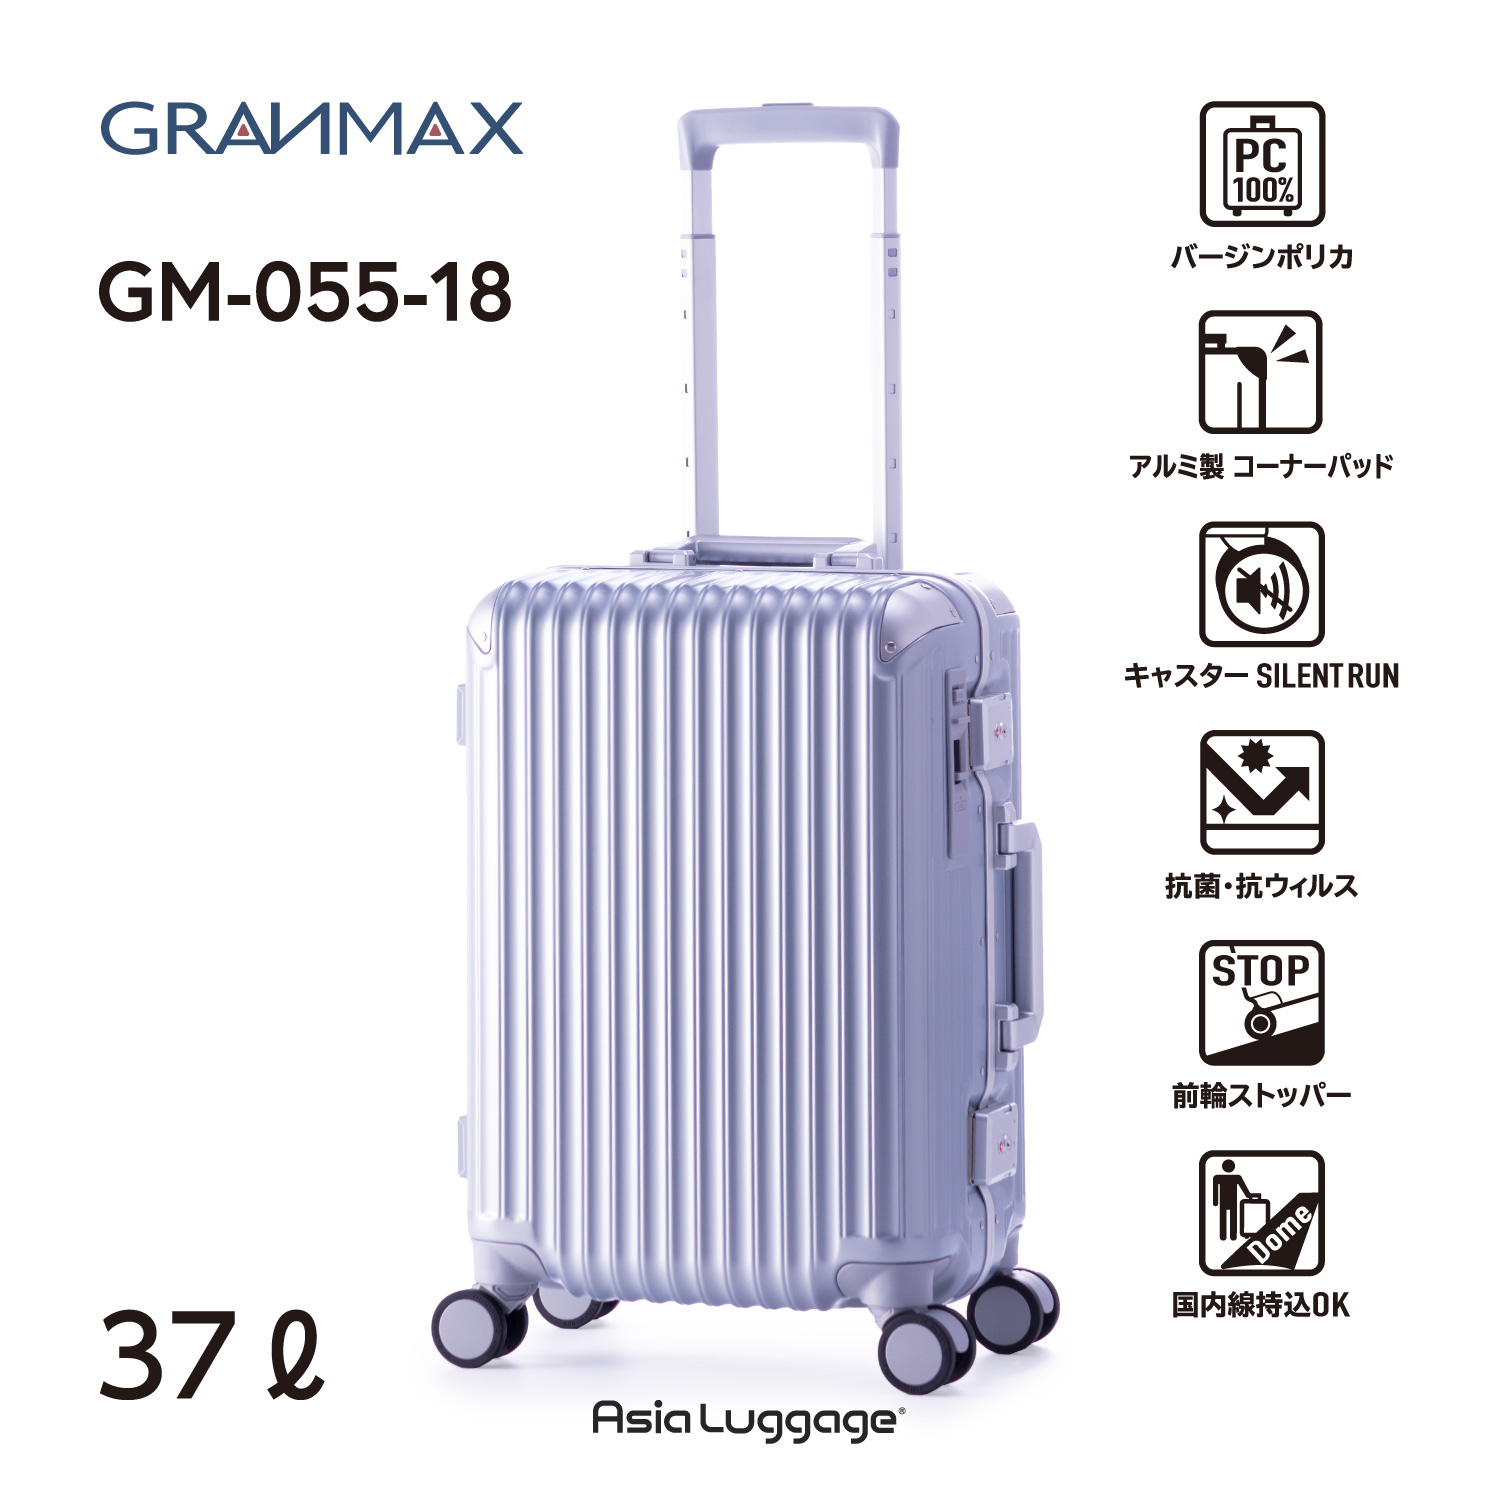 シンプルでスタイリッシュ!大容量を誇るフレームタイプ![GRANMAX]GM-055-18[3〜4泊]37L